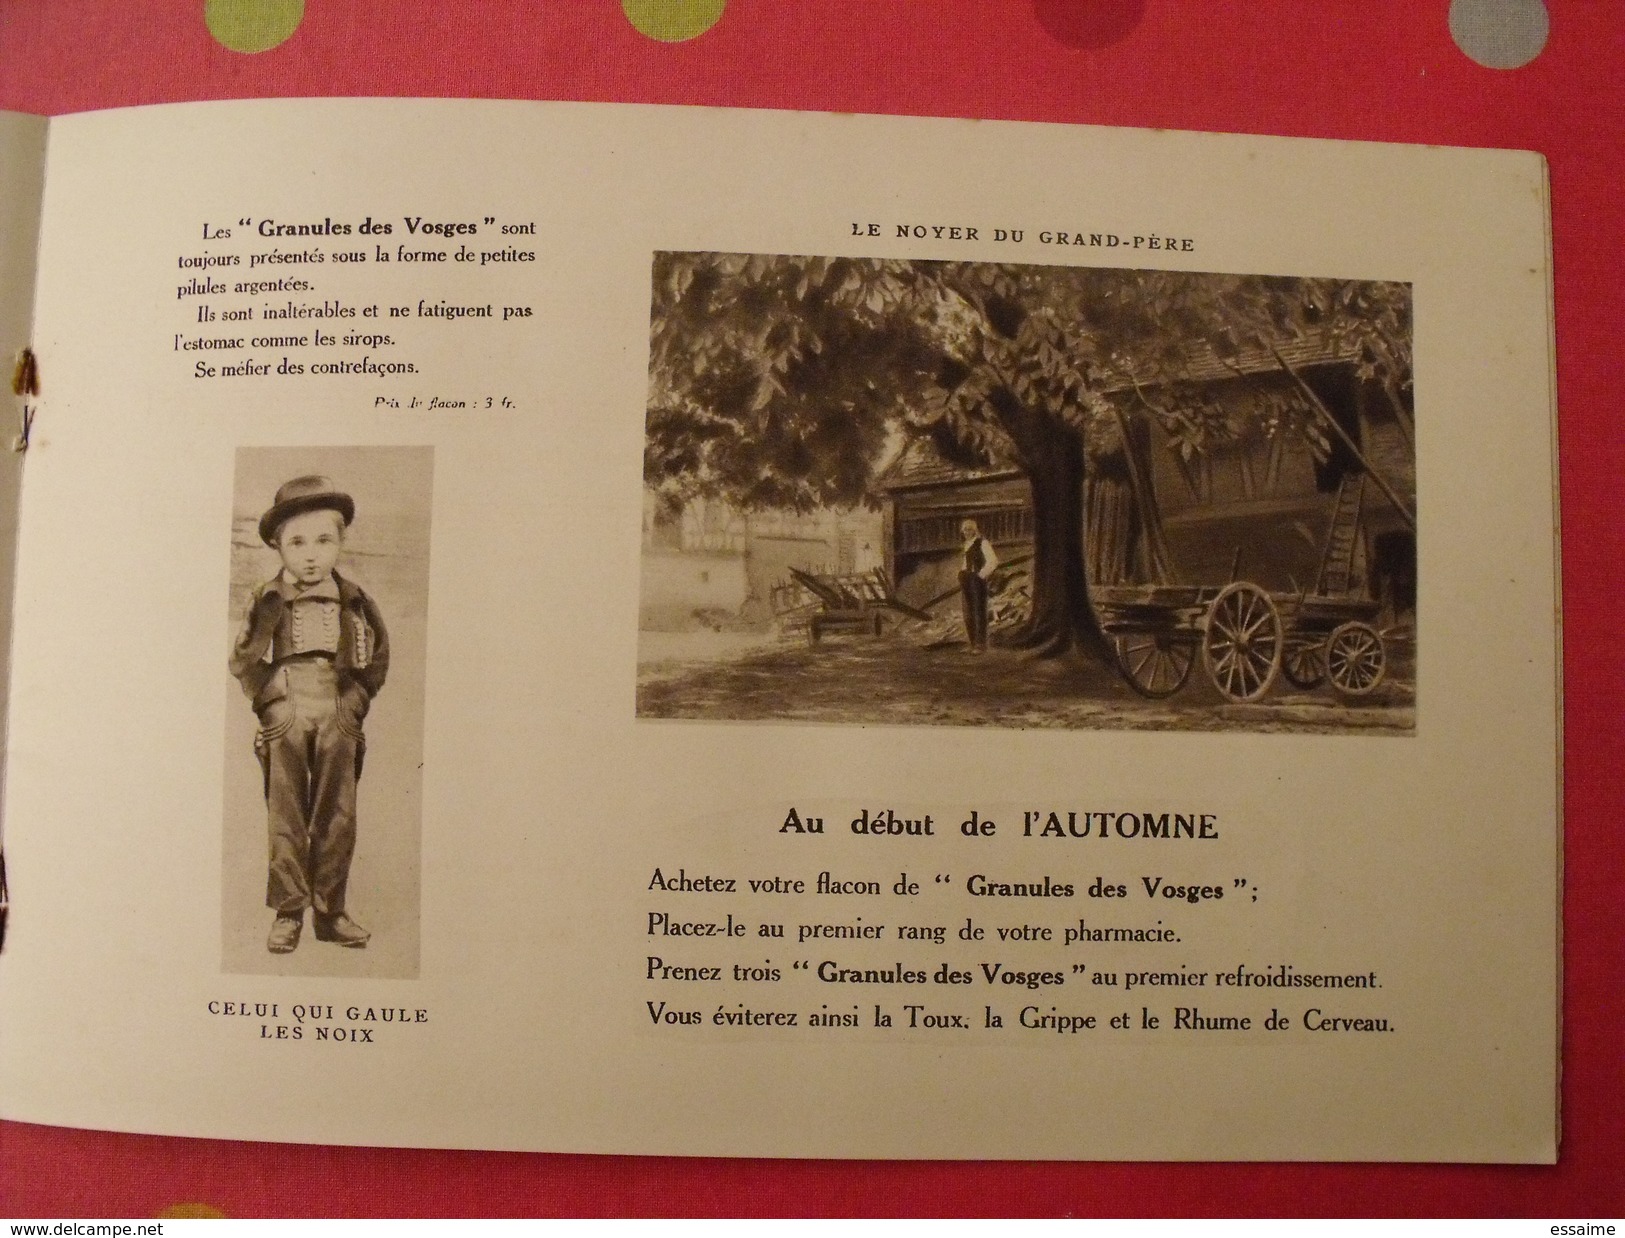 Scènes de la vie dans les Vosges. offert par Granules des Vosges. vers 1930